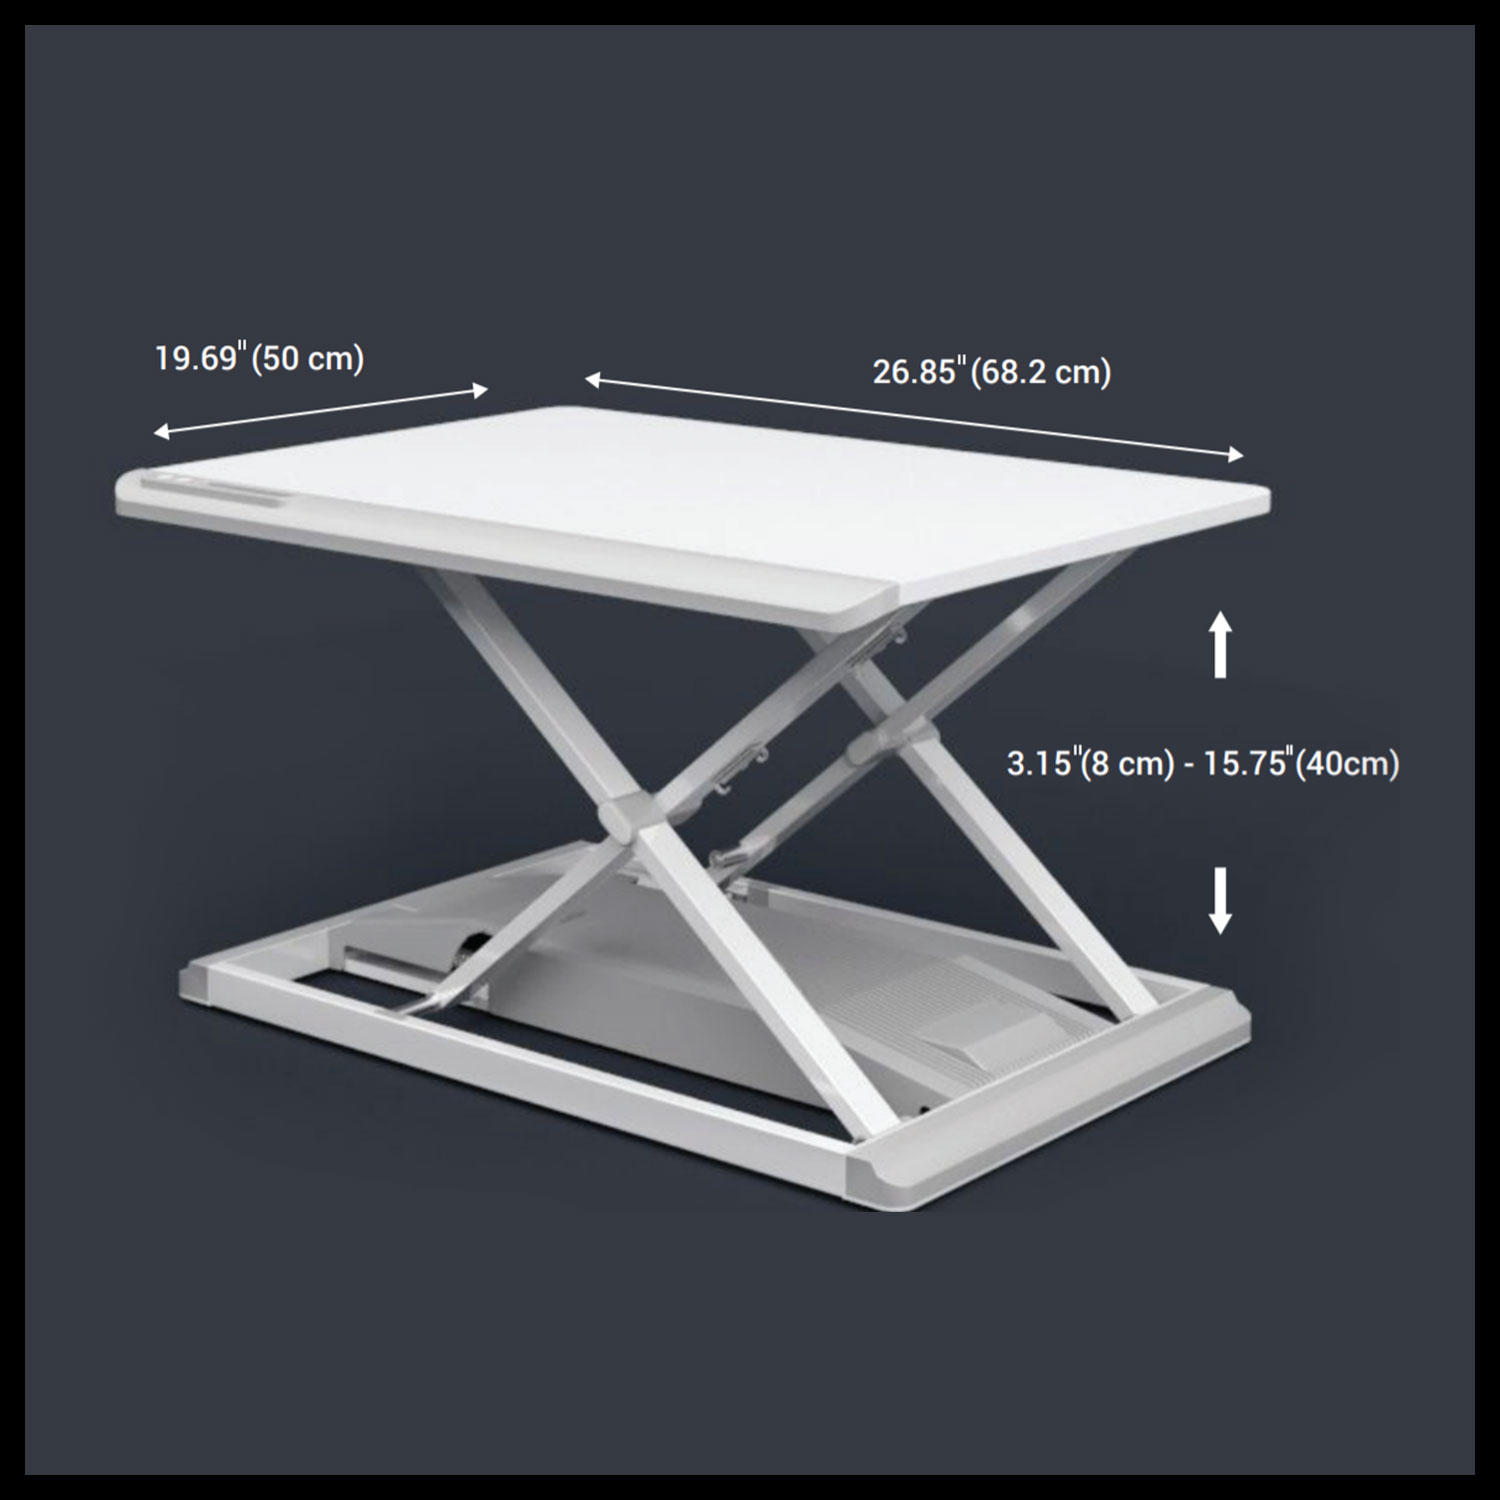 portable standing desk converter